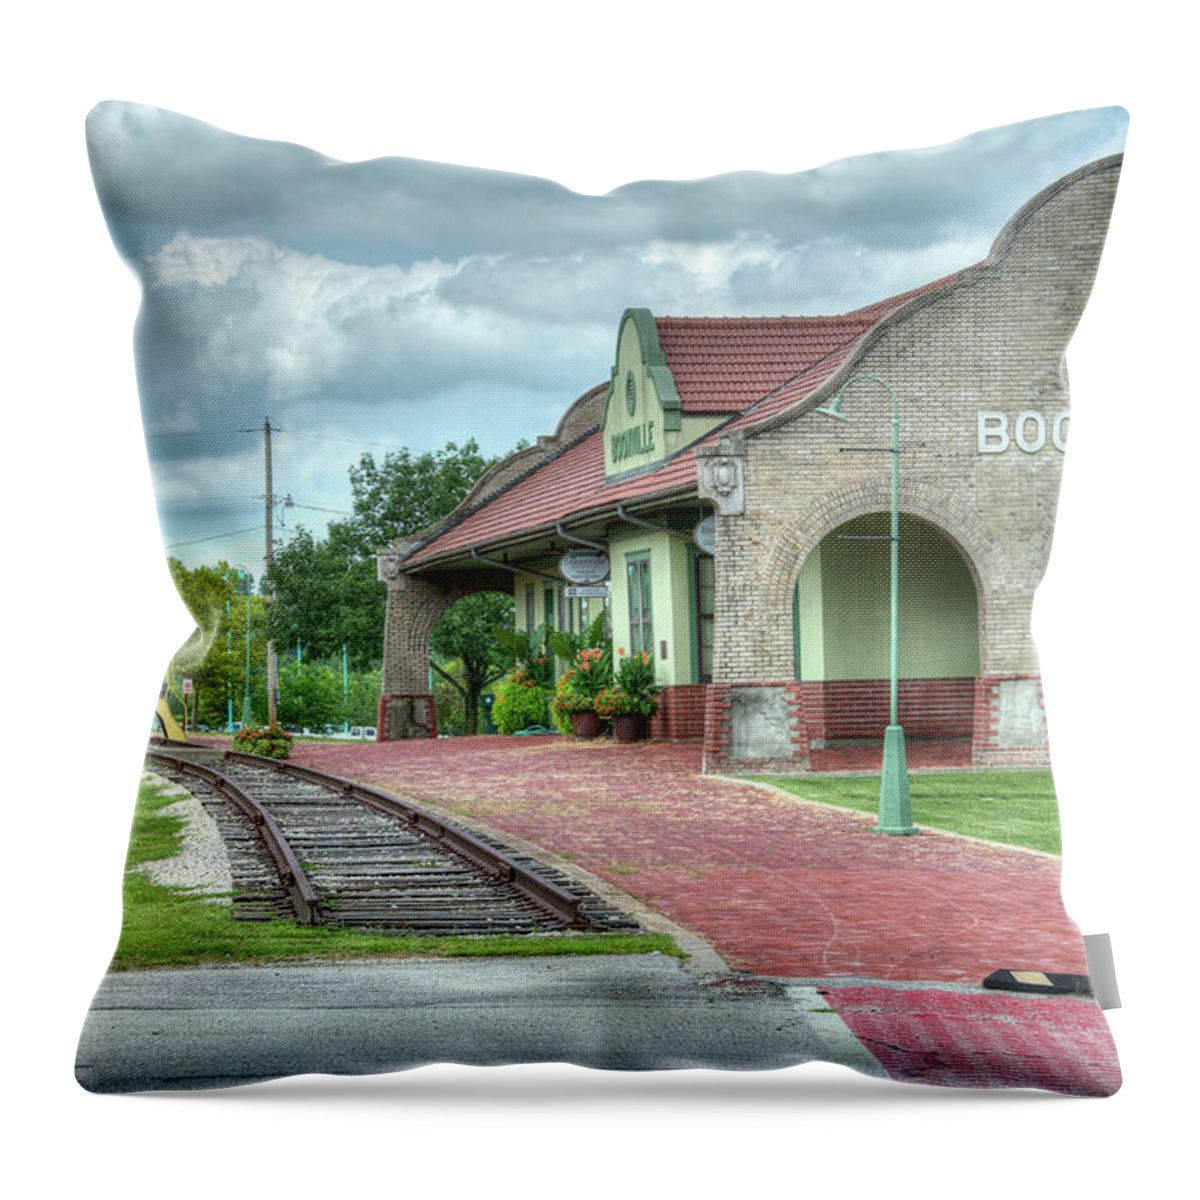 Missouri Throw Pillow featuring the photograph Booneville Depot by Steve Stuller